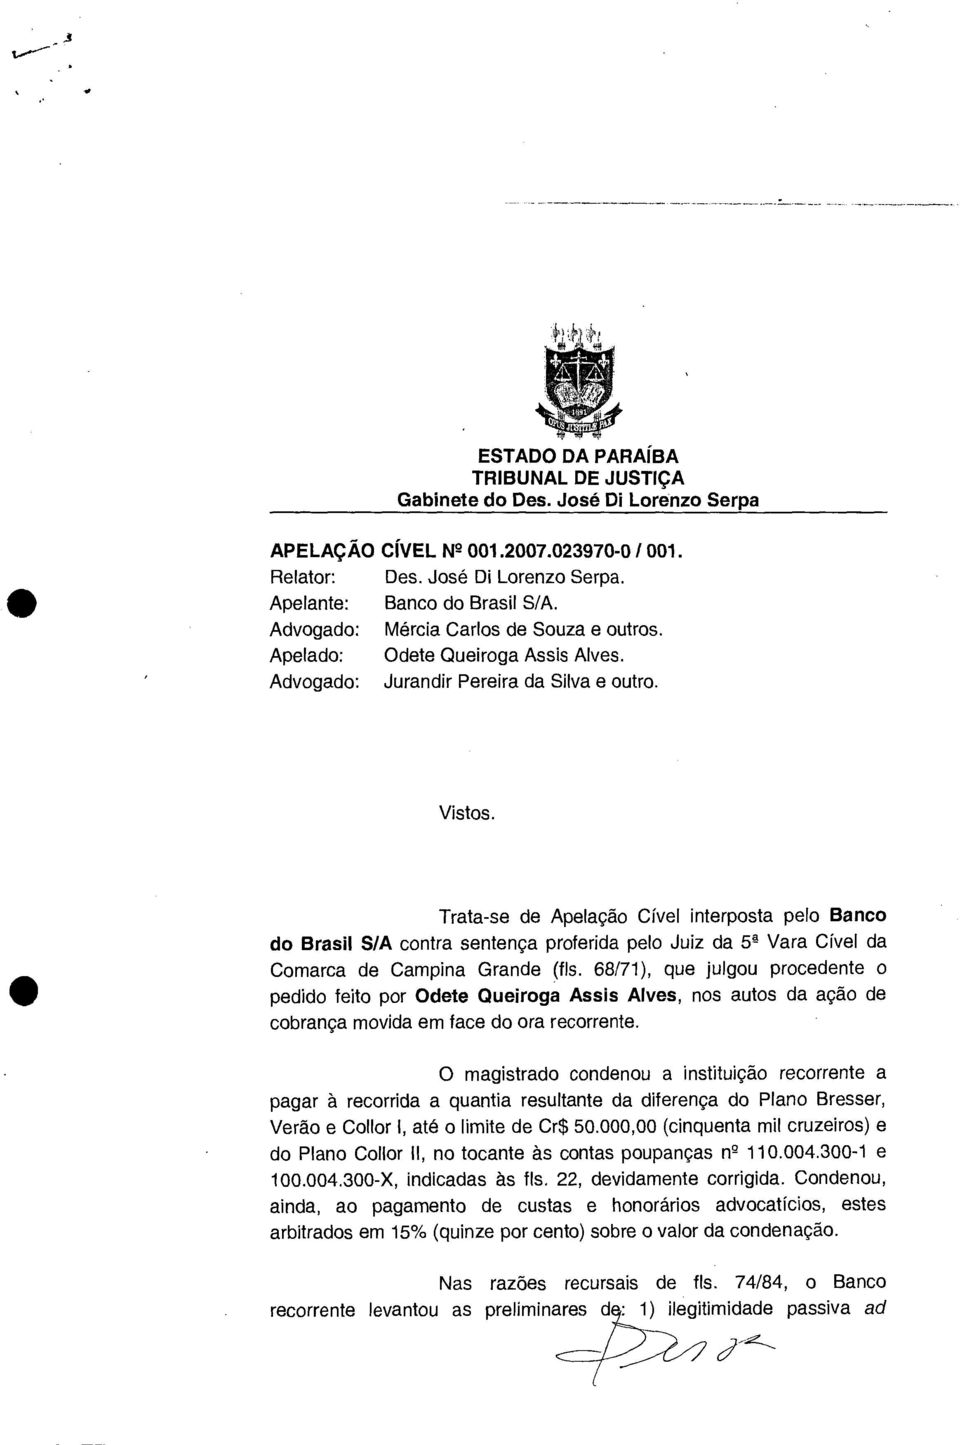 Trata-se de Apelação Cível interposta pelo Banco do Brasil S/A contra sentença proferida pelo Juiz da 5 4 Vara Cível da Comarca de Campina Grande (fls.